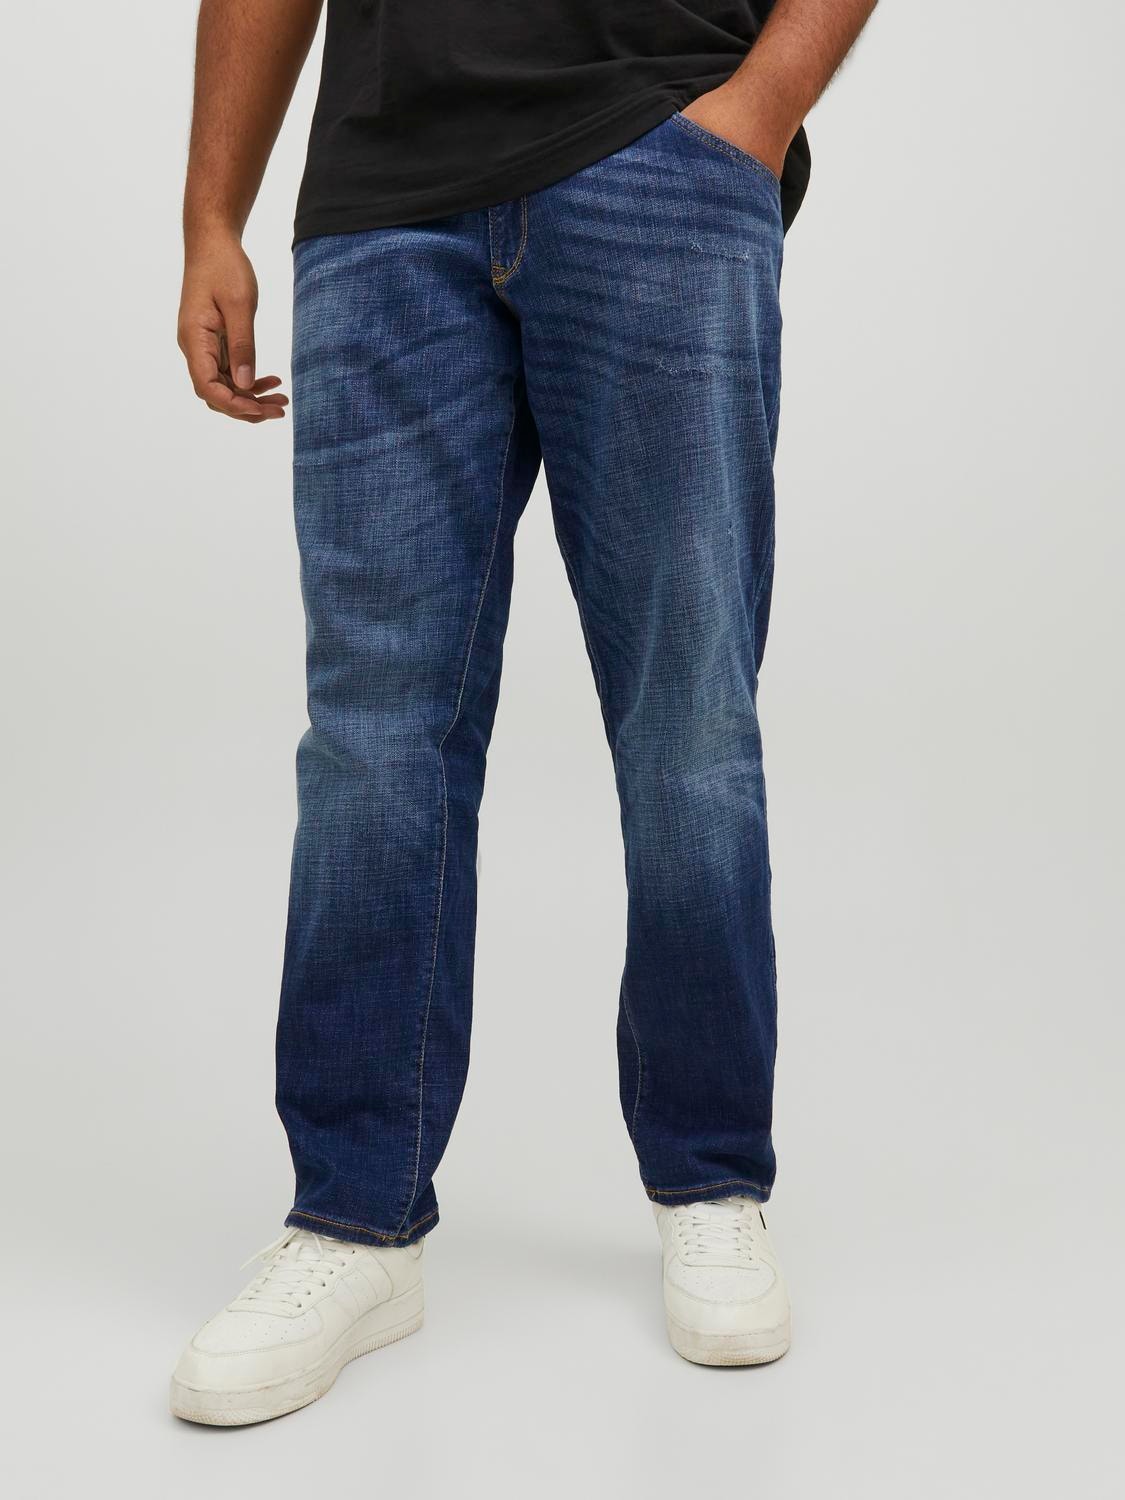 Jeaniologie ™ Men 5-Pocket Slim Fit Jeans | Blue-Black Wash, Sizes 28 - 38